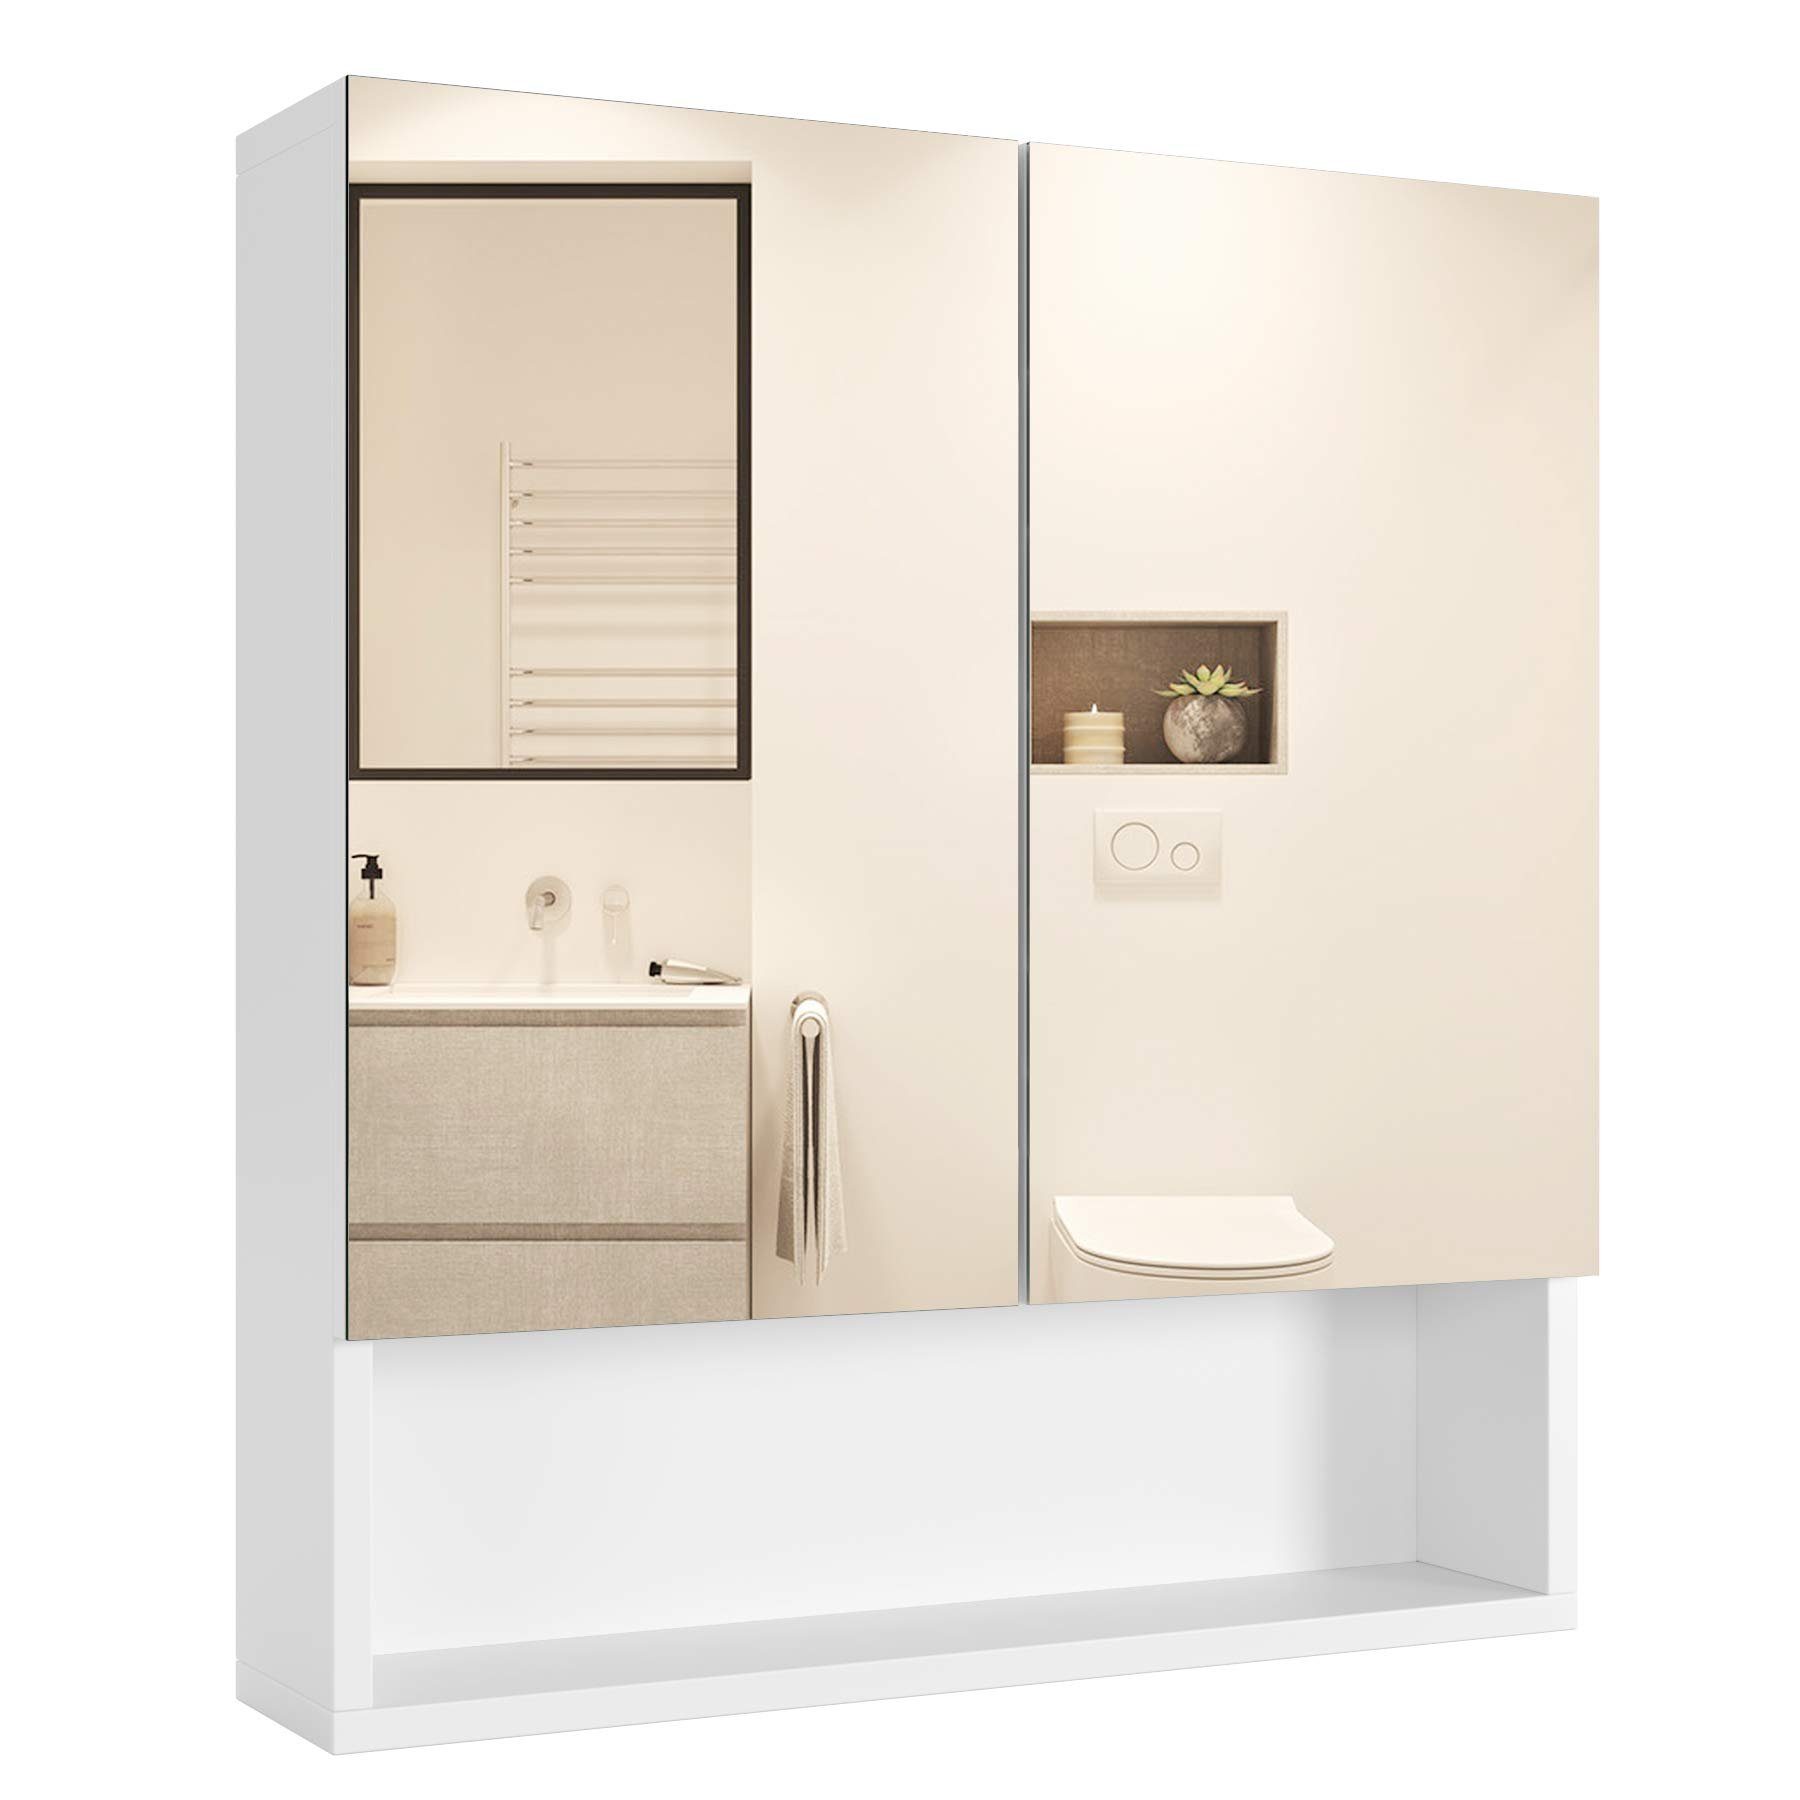 Homfa Spiegelschrank Hängeschrank, Badezimmerschrank, mit Türen und Ablage, 53x58x13cm, weiß | Spiegelschränke